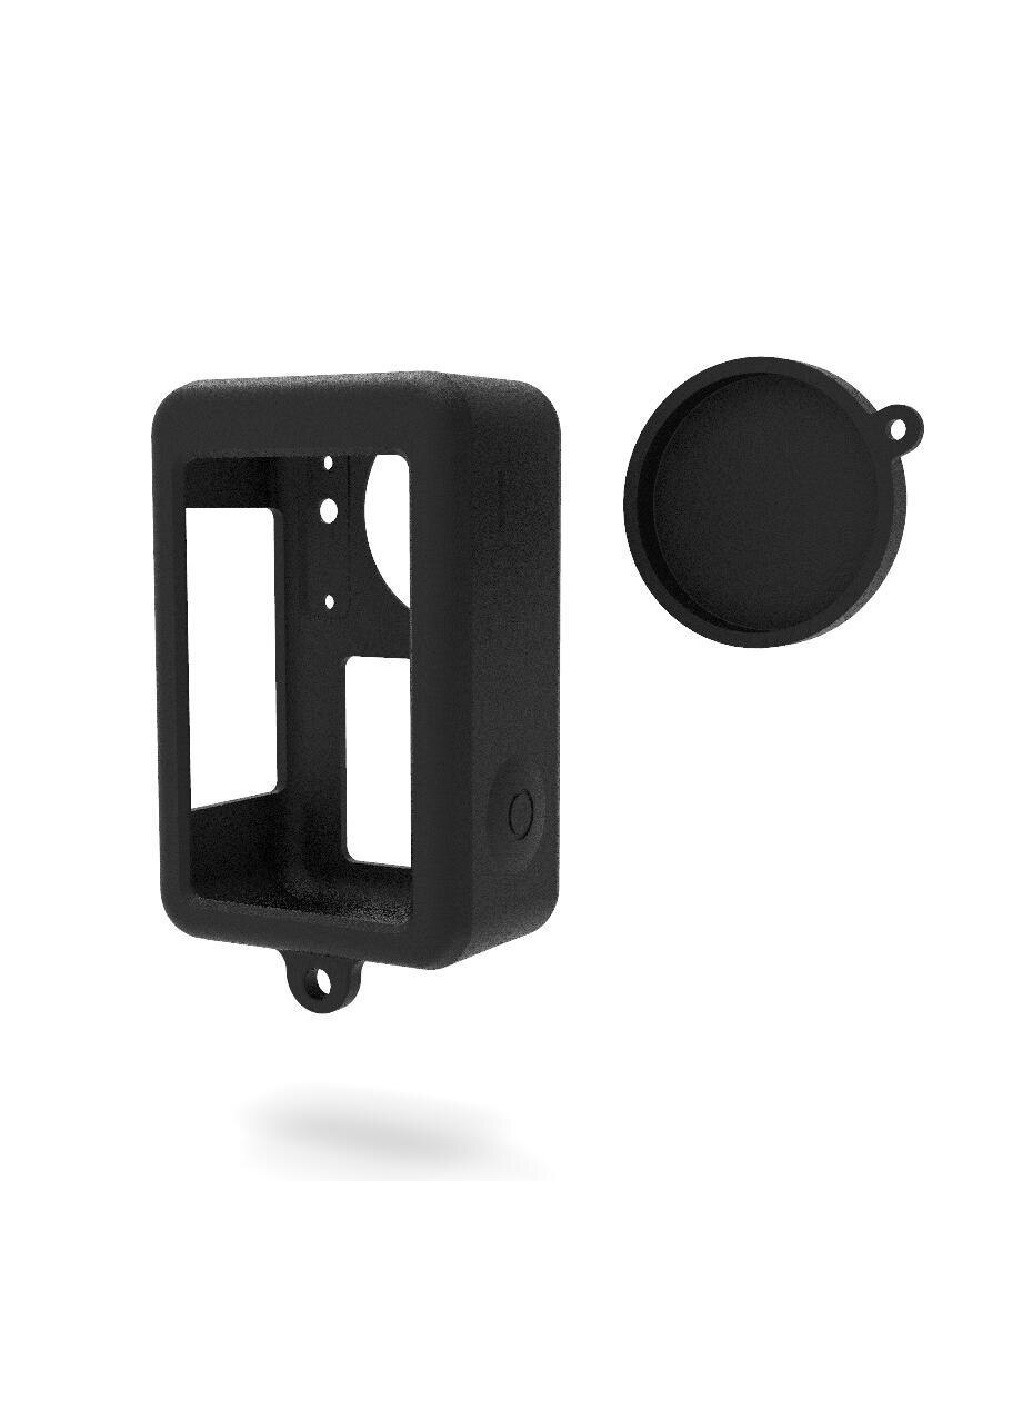 Защитный силиконовый чехол защита от пыли загрязнения царапин ударов для экшн камеры для DJI Action 3 (474922-Prob) Черный Unbranded (260377283)